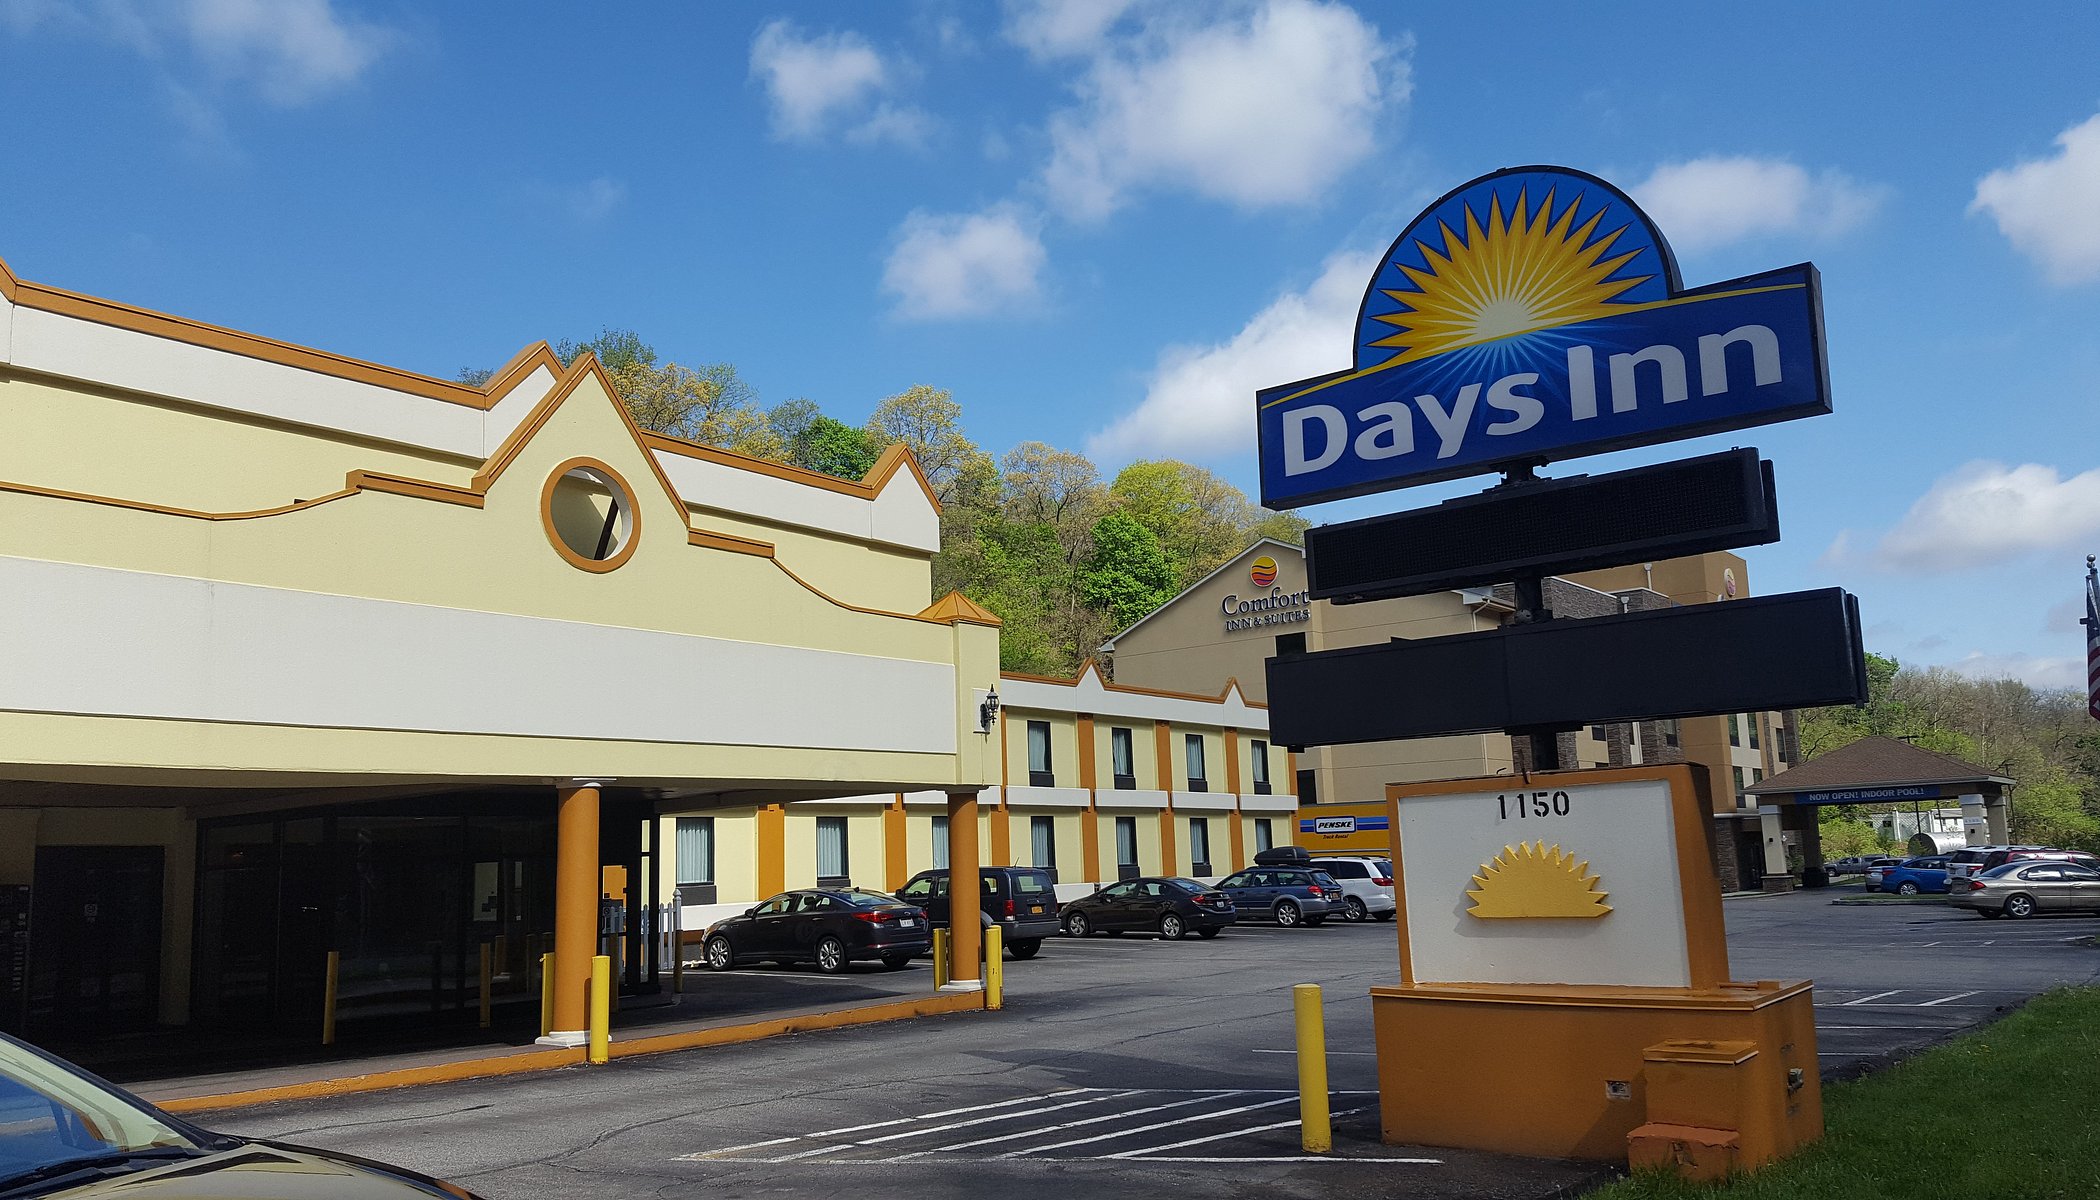 Days Inn by Wyndham Pittsburgh image